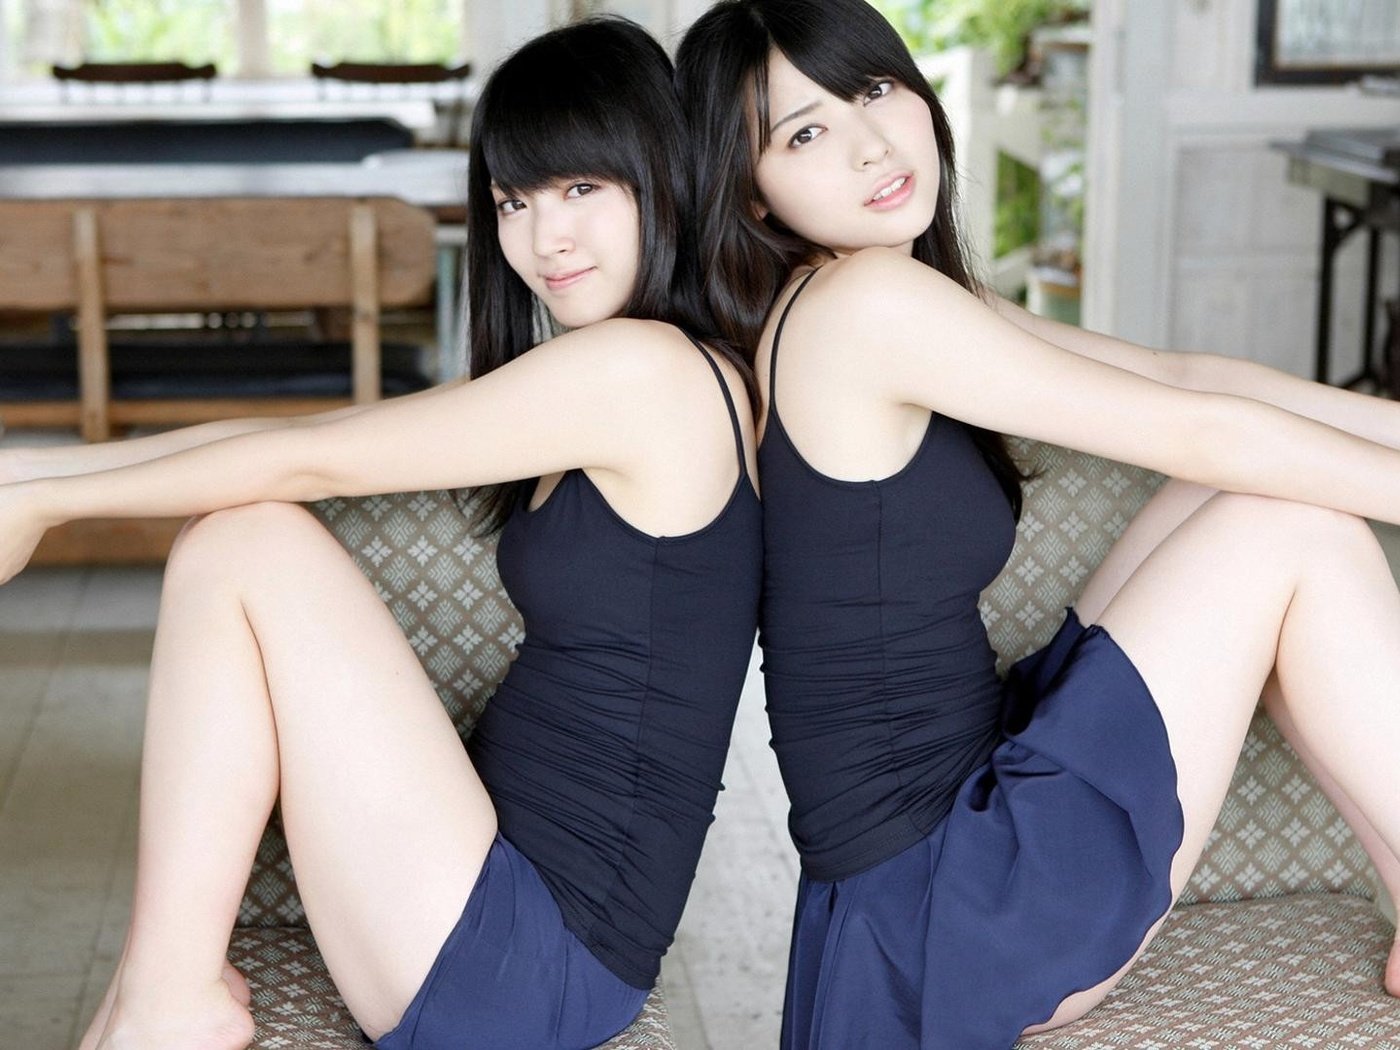 Japanese girl lesbian. Две девочки азиатки. Азиатские девочки лесби. Девушки азиатки брюнетки. Азиаточки лесбияночки в мини.